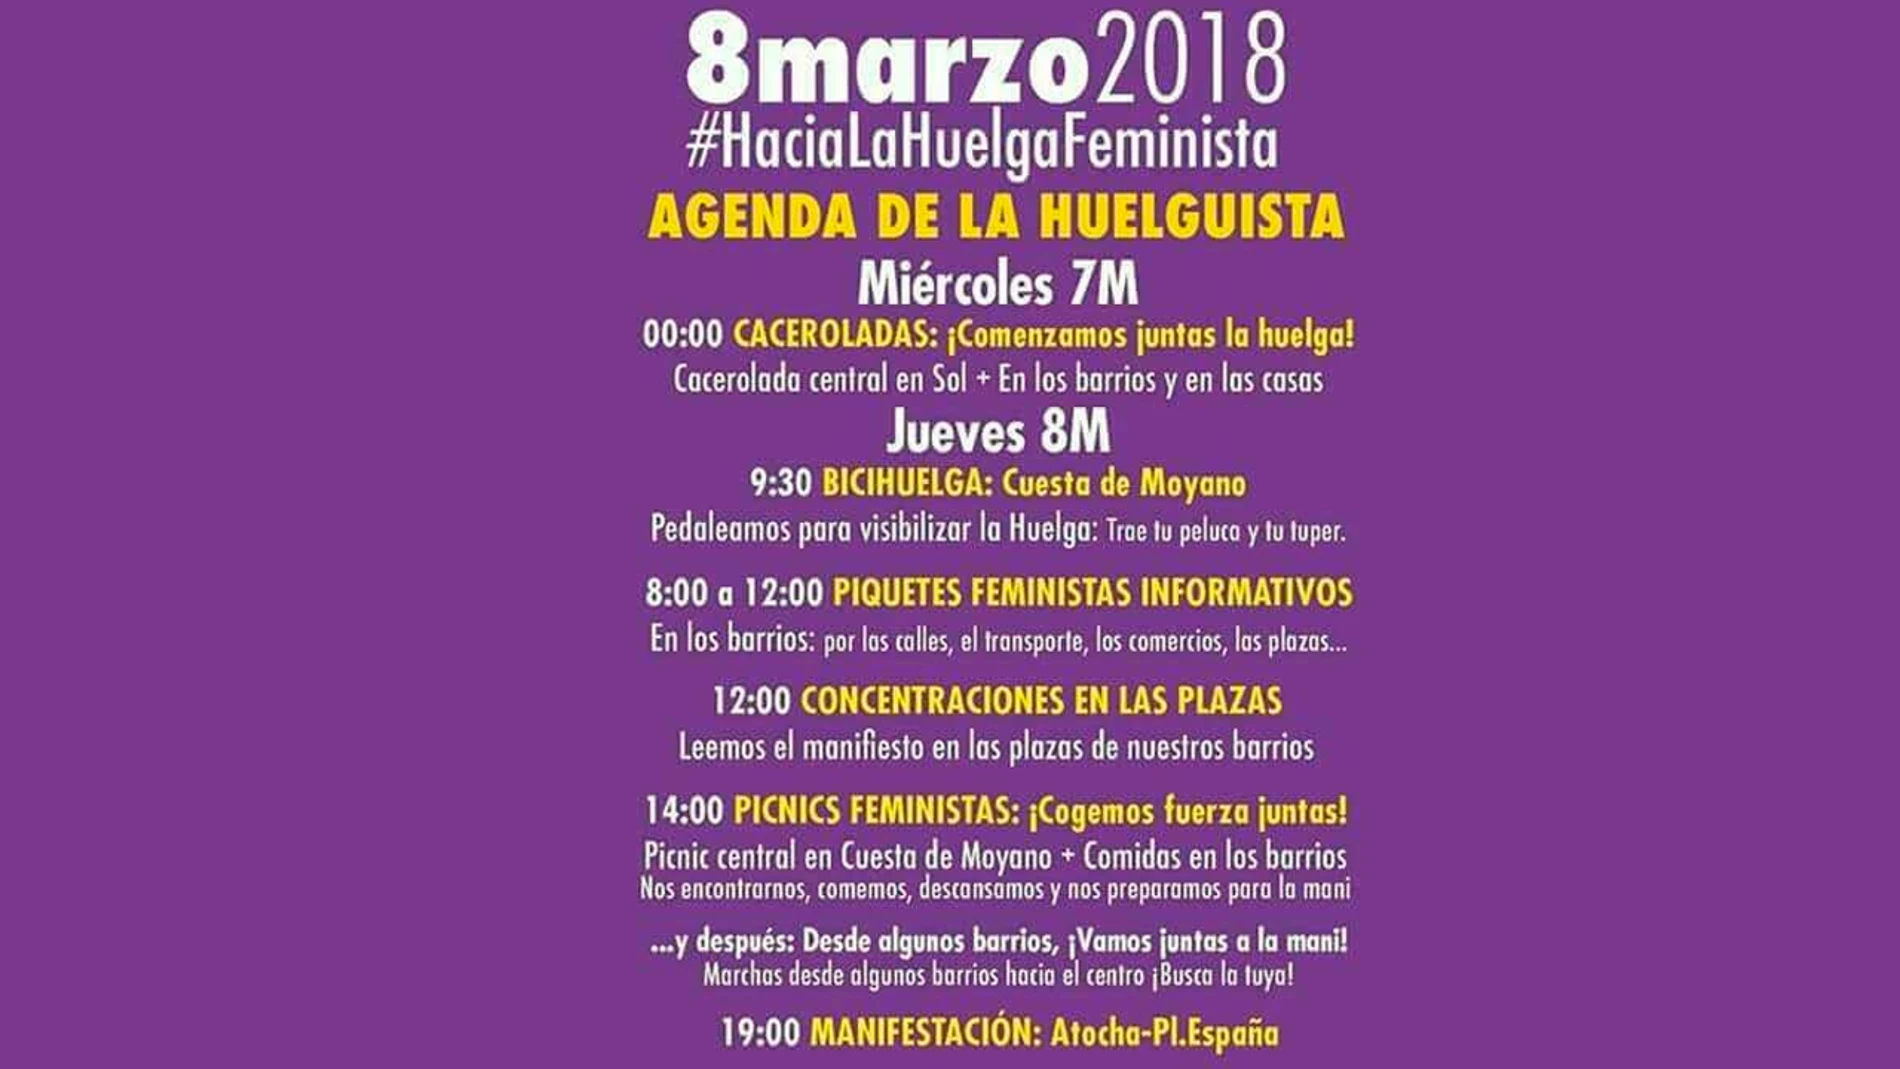 Agenda para la huelga feminista del 8 de marzo